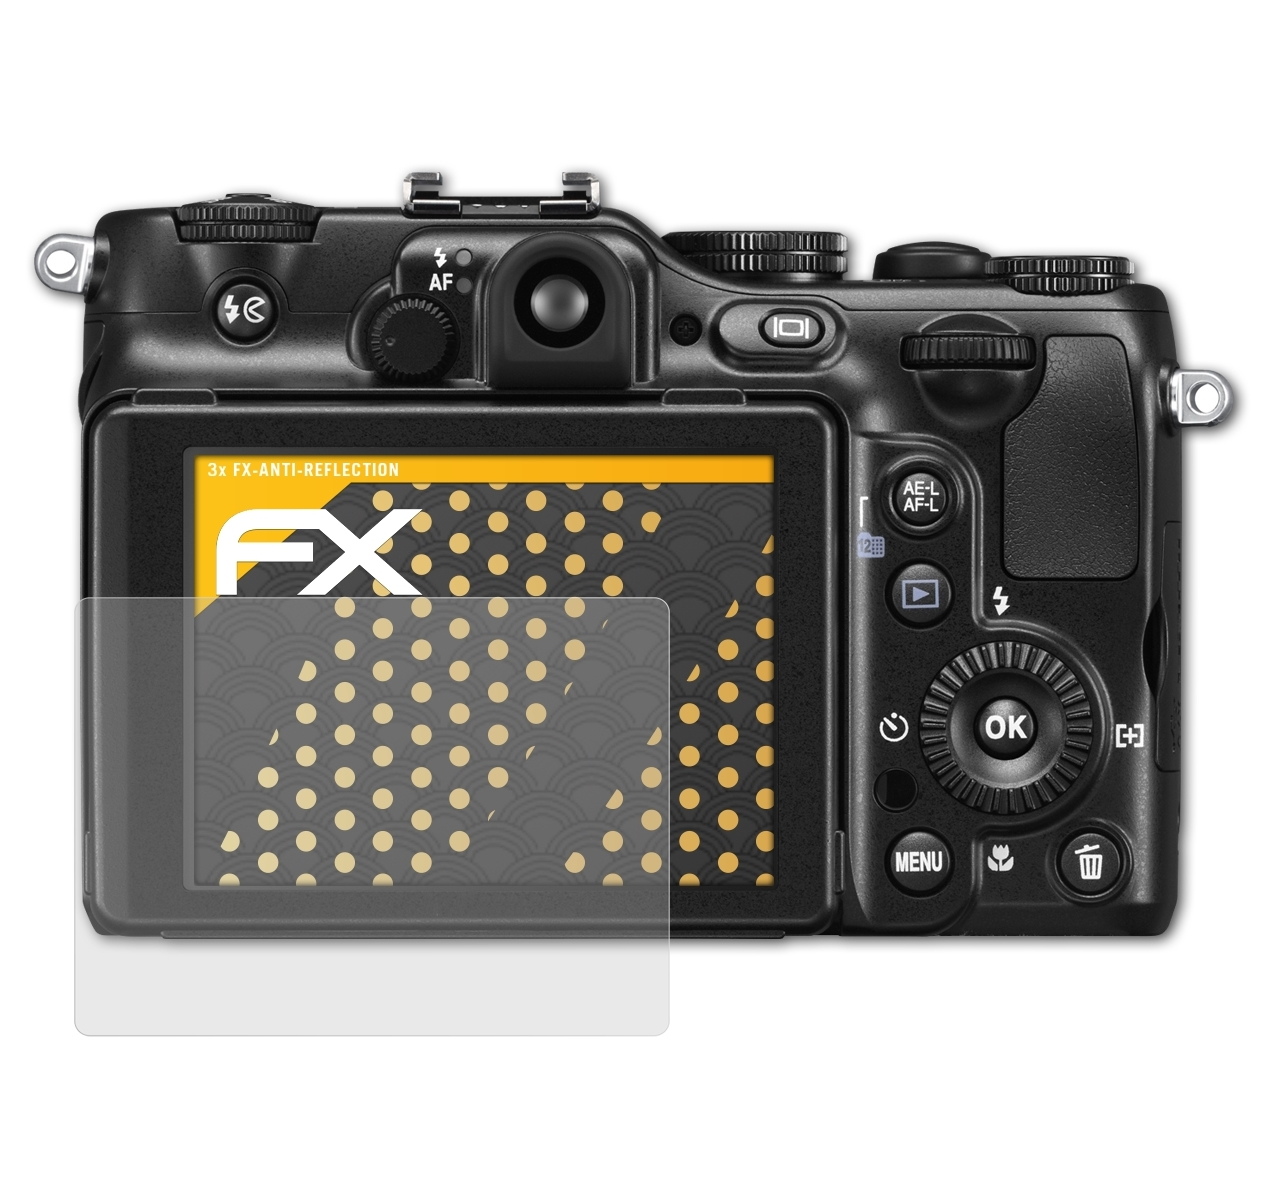 ATFOLIX 3x FX-Antireflex Displayschutz(für P7100) Nikon Coolpix